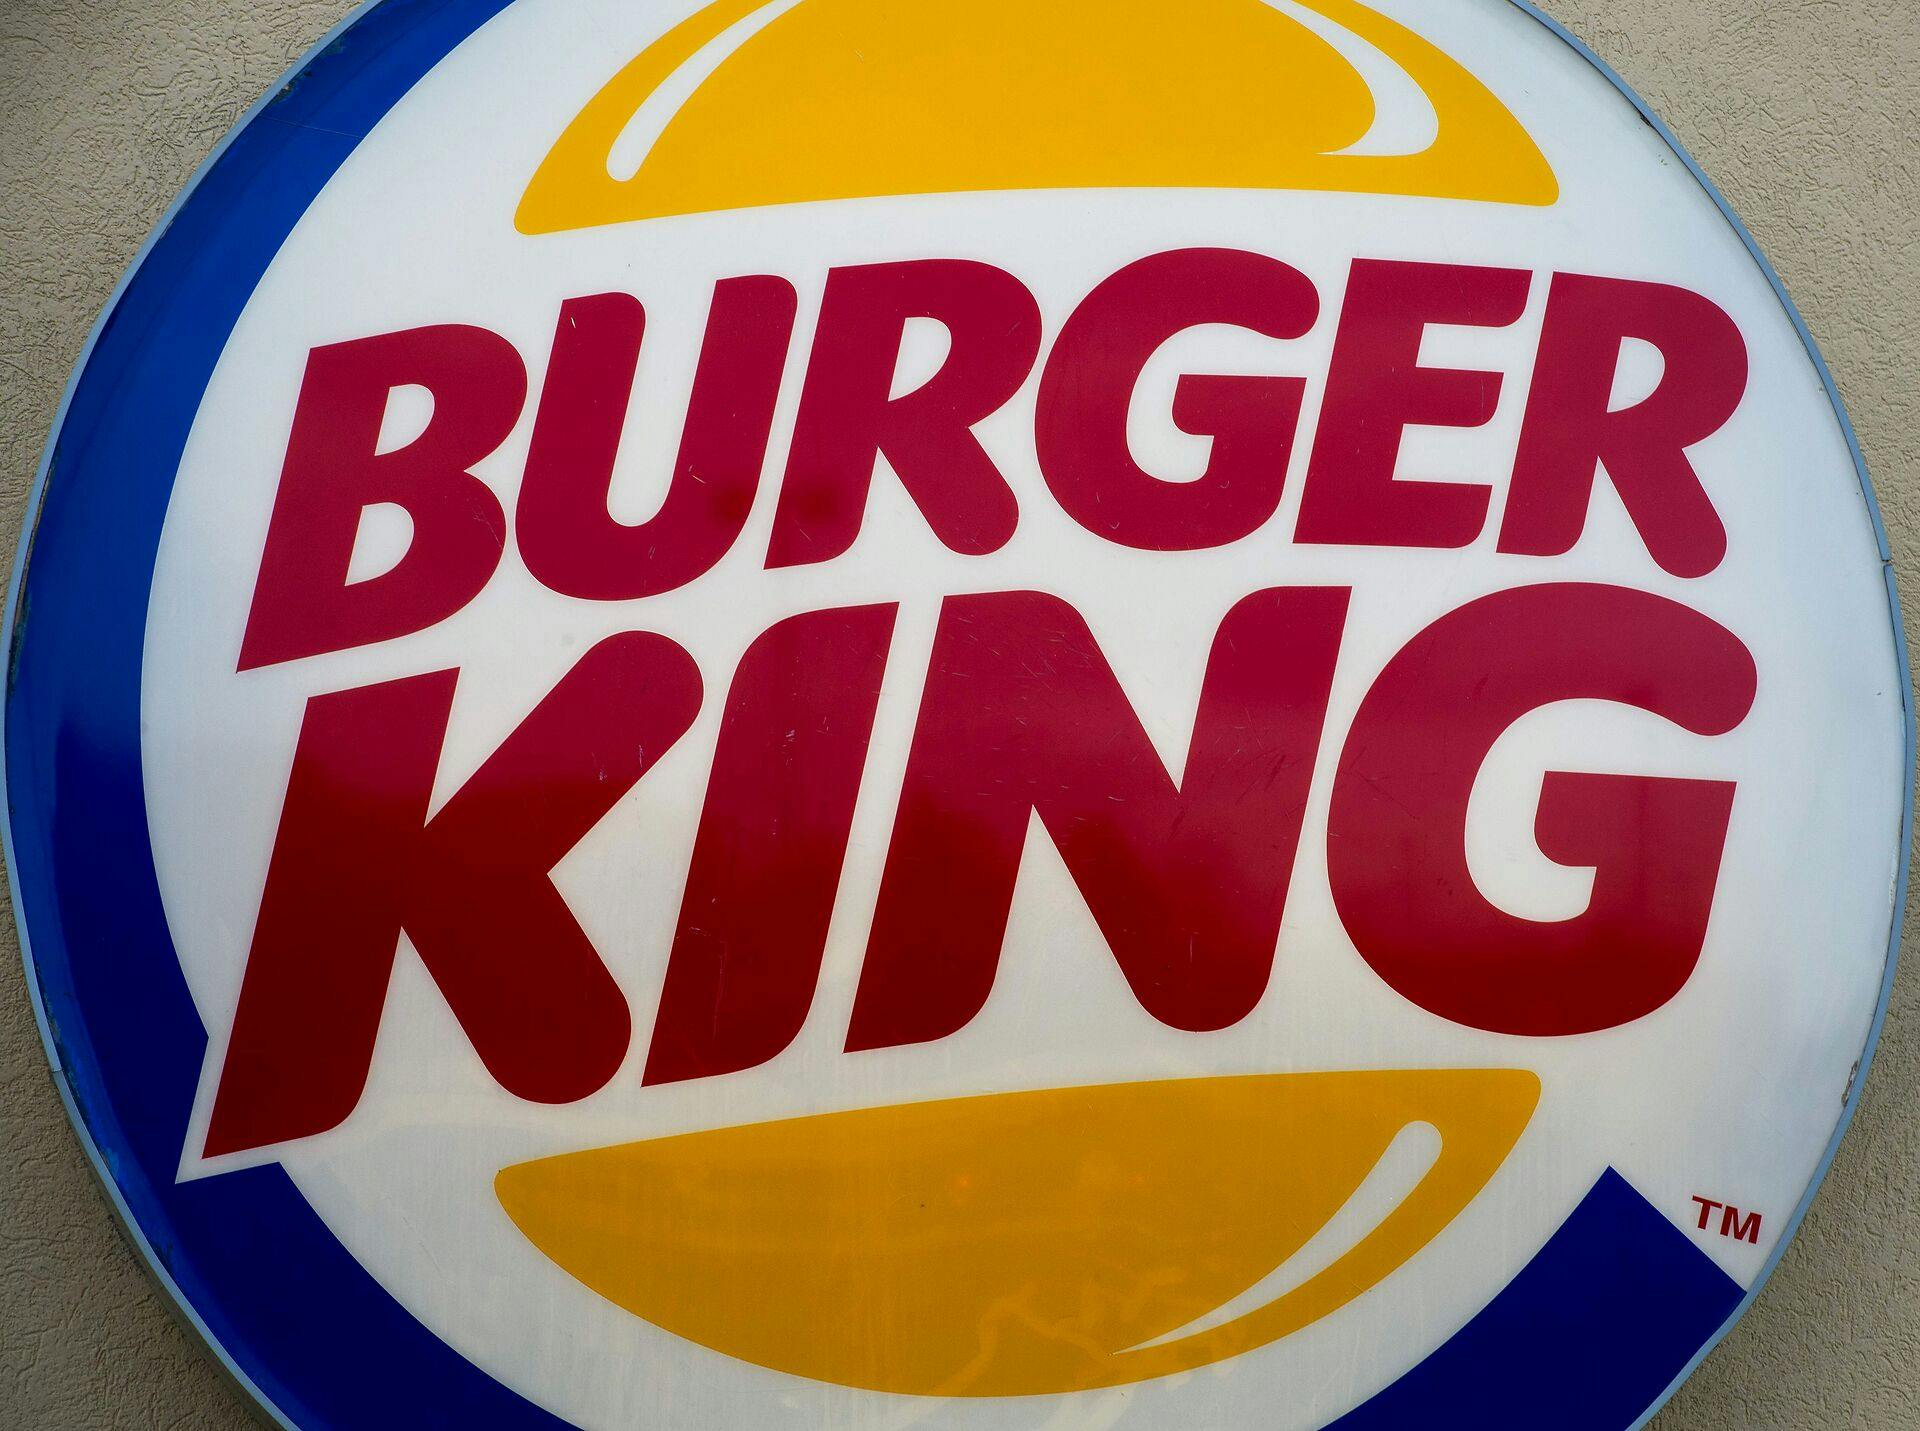 Burger King er den femtestørste fastfoodkæde baseret på indkomst. Kæden bliver udkonkurreret af McDonalds, Subway, Starbucks og KFC. 